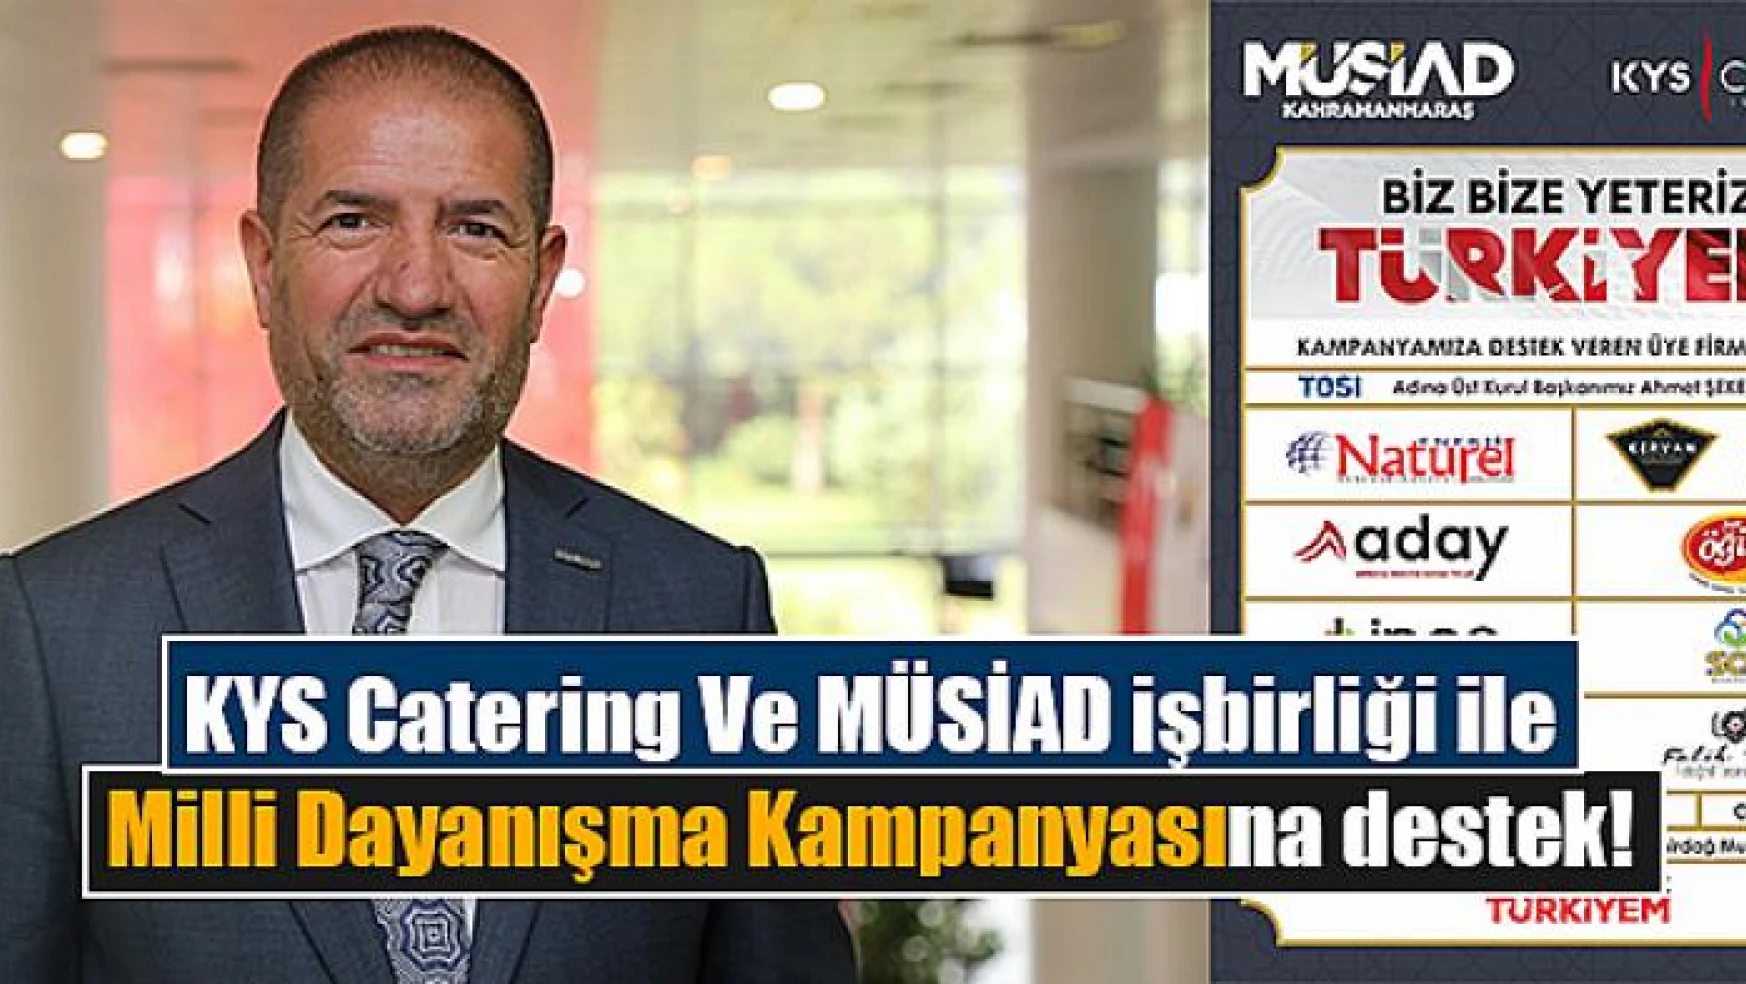 KYS Catering Ve MÜSİAD işbirliği ile Milli Dayanışma Kampanyasına destek!